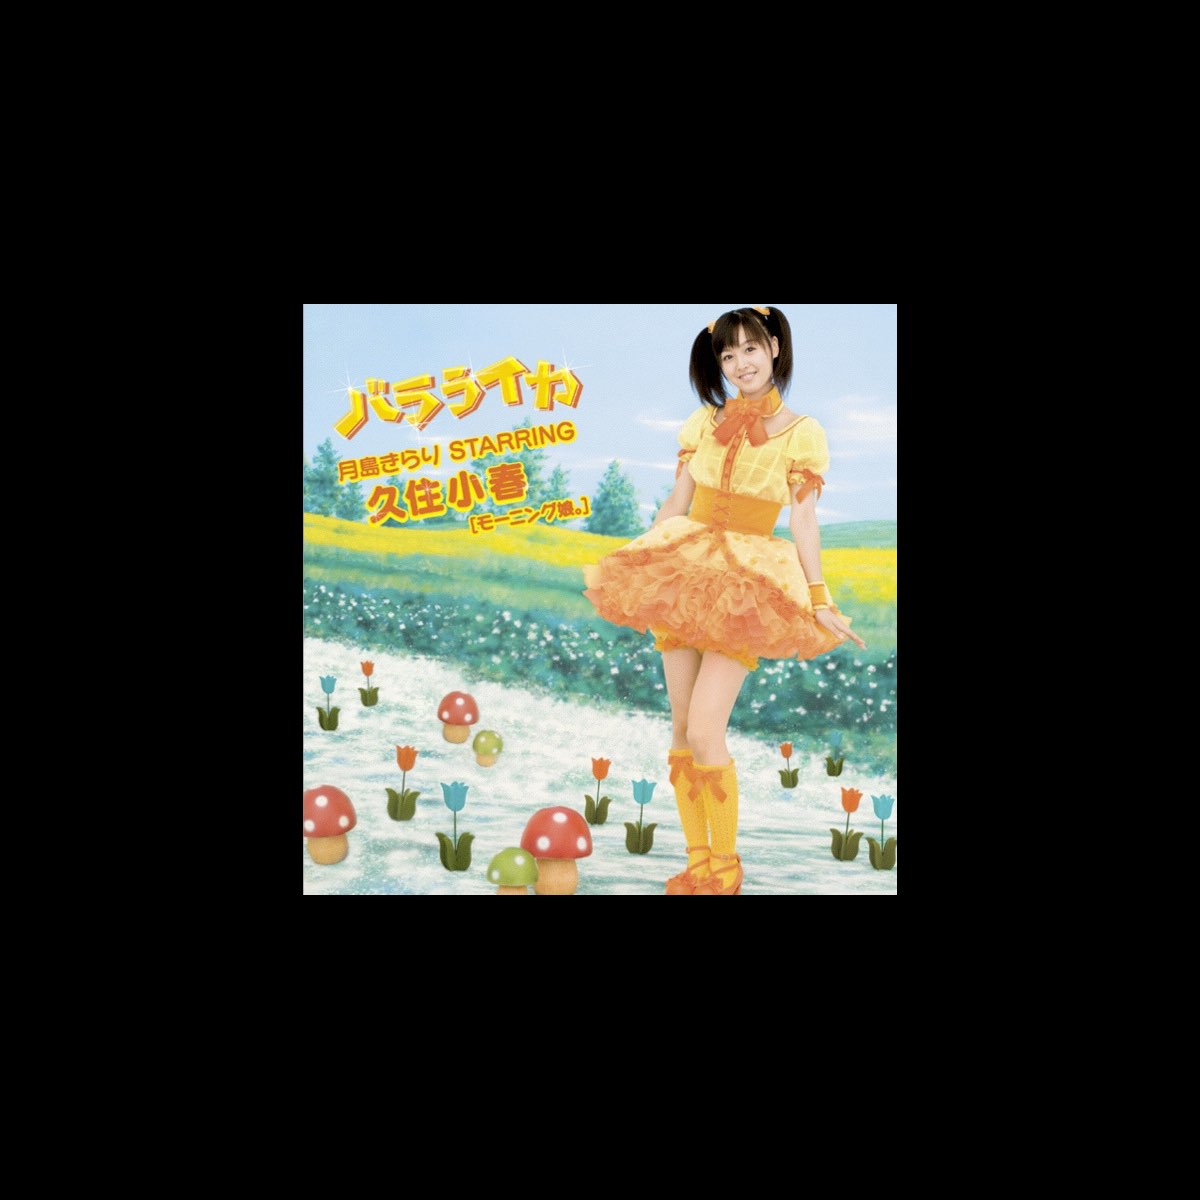 Balalaika - EP - Album by Tsukishima Kirari Starring Kusumi Koharu  (Morningmusume。) - Apple Music